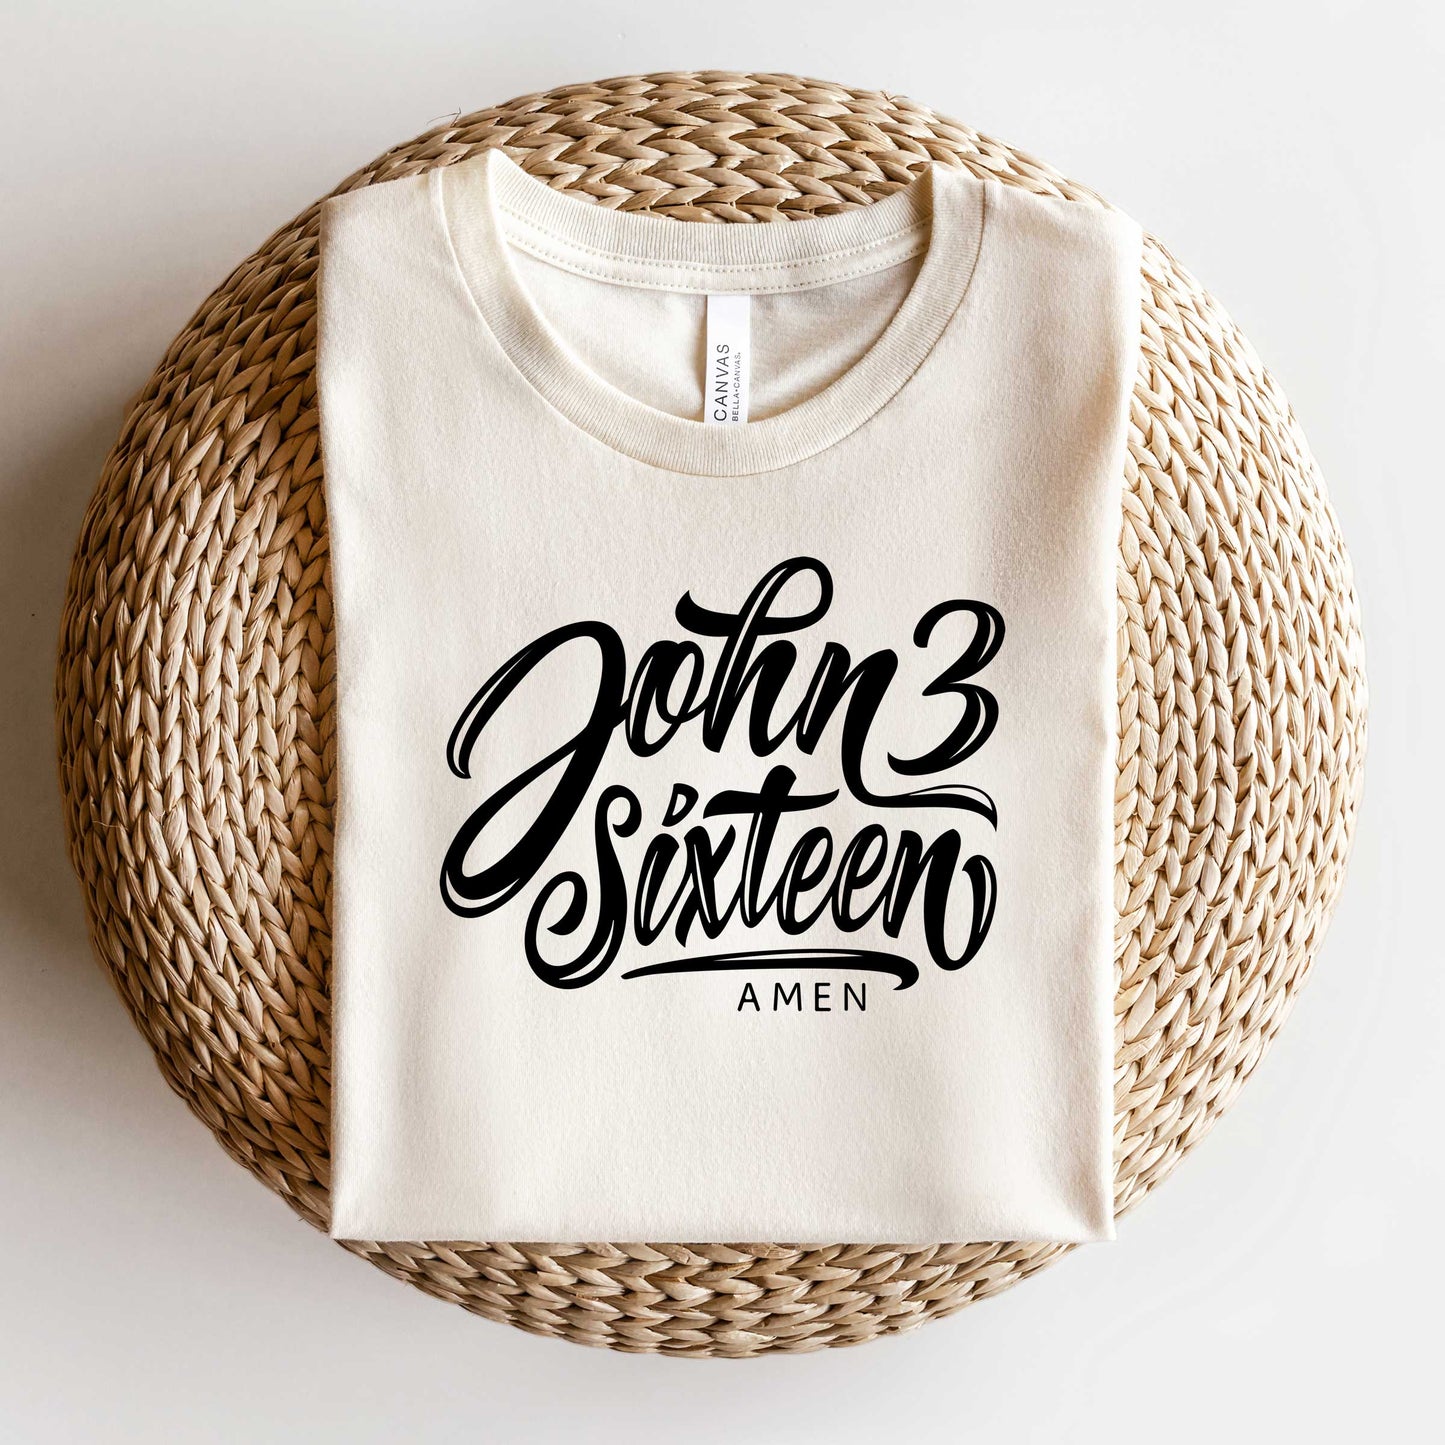 John 3 Sixteen | Short Sleeve Crew Neck